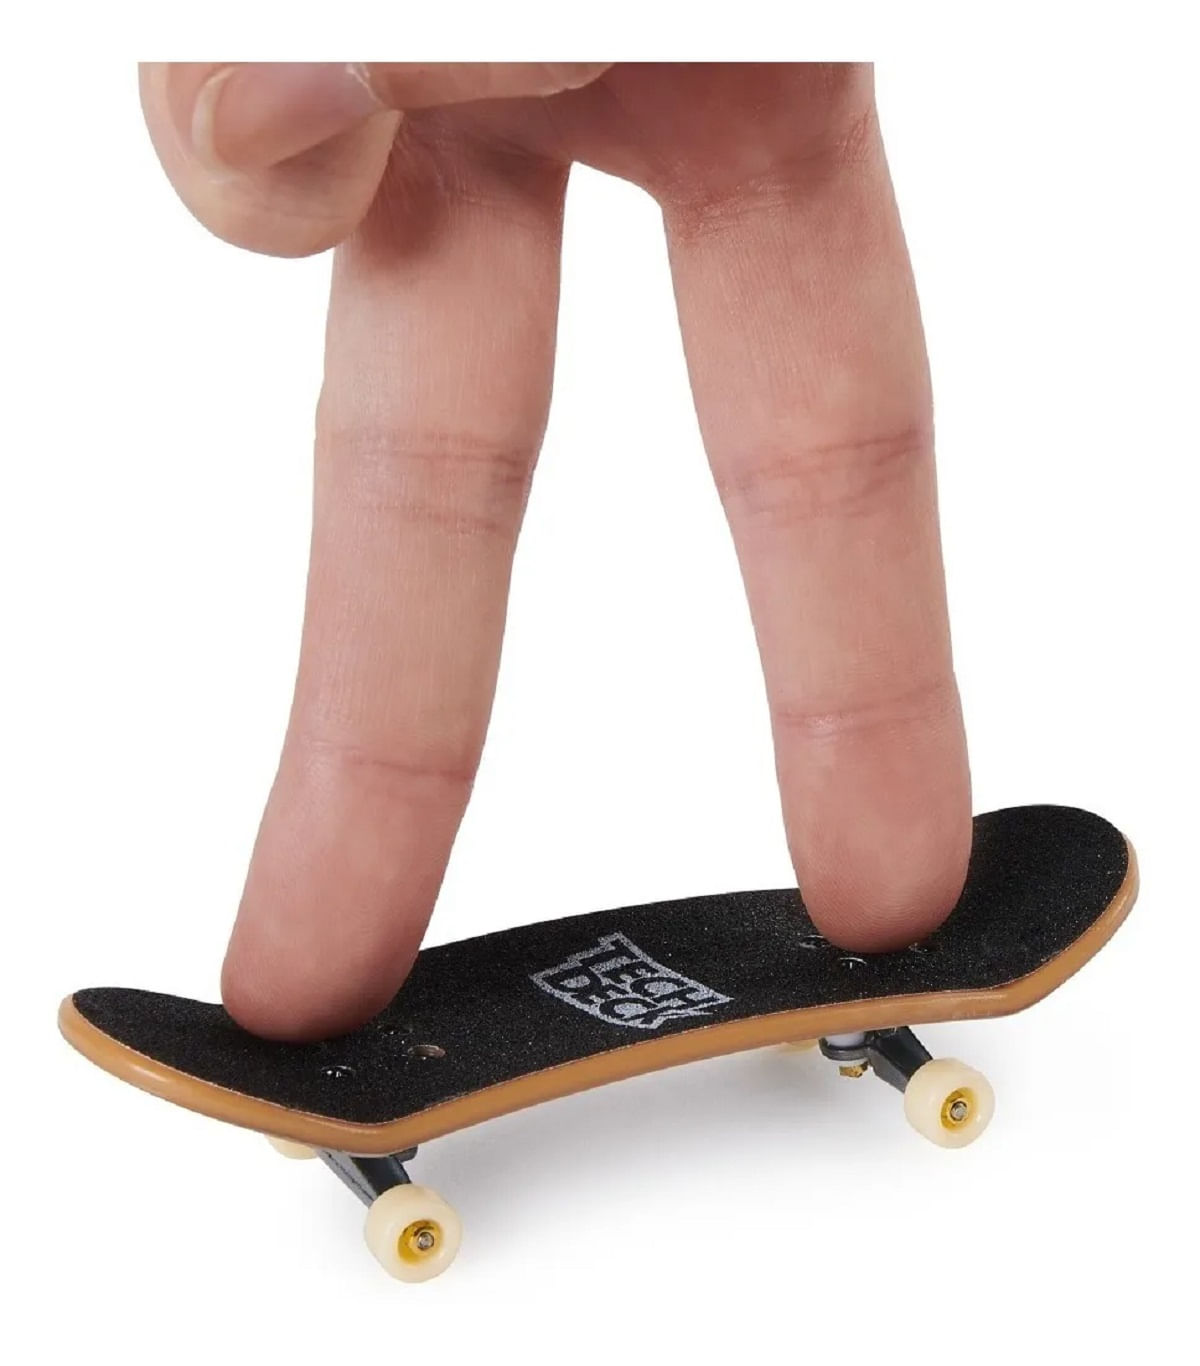 Compre Kit 4 Skate de Dedo Coleção DGK - Tech Deck aqui na Sunny Brinquedos.